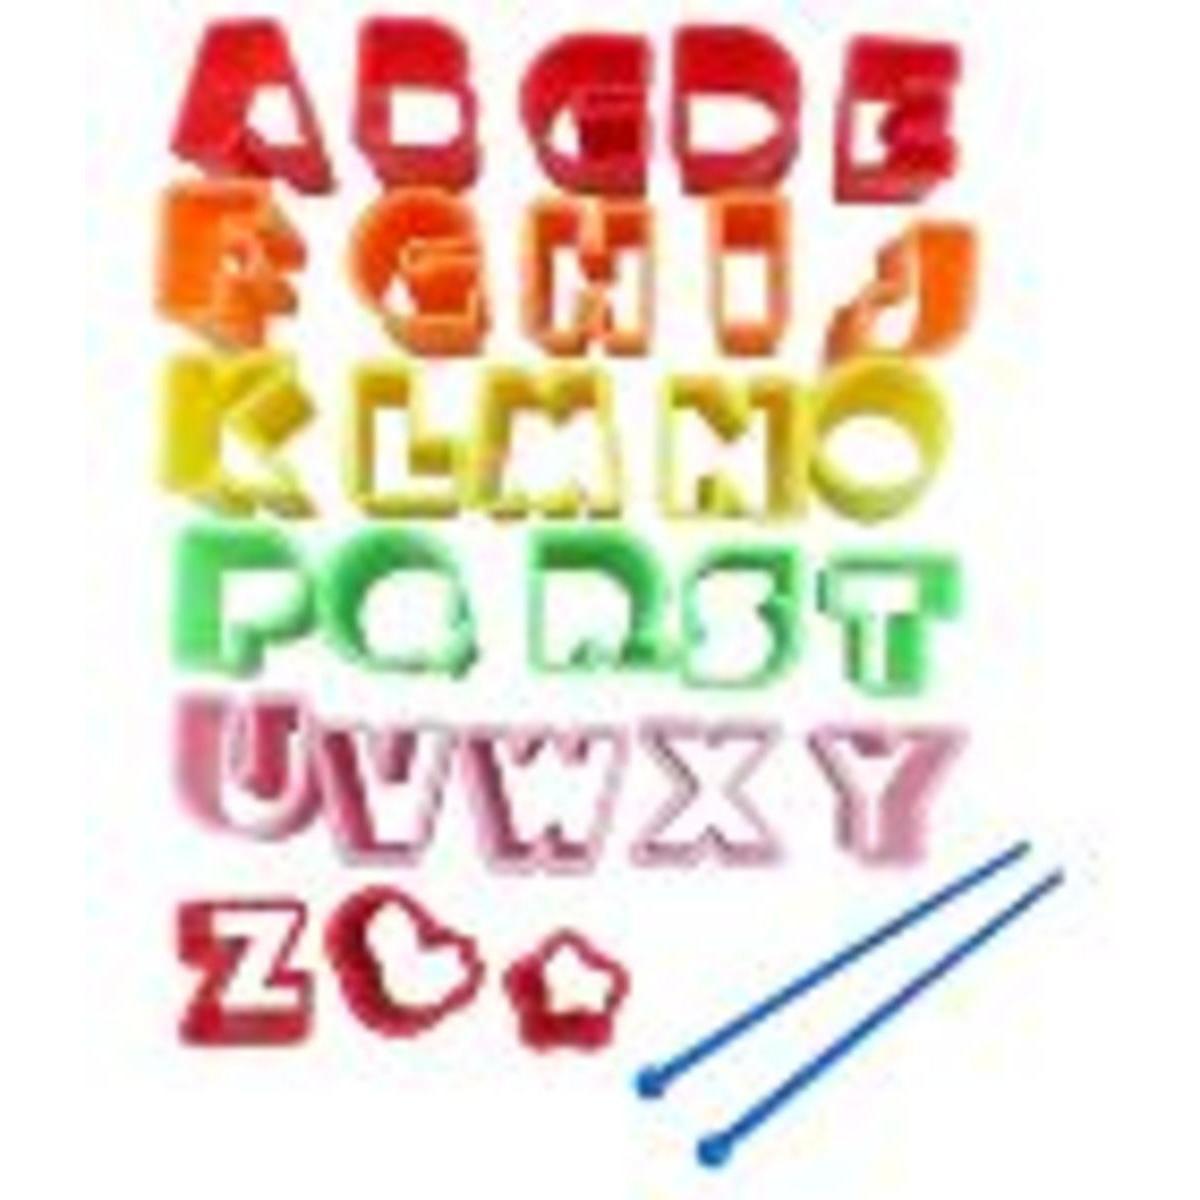 Emporte-pièce alphabet x 27